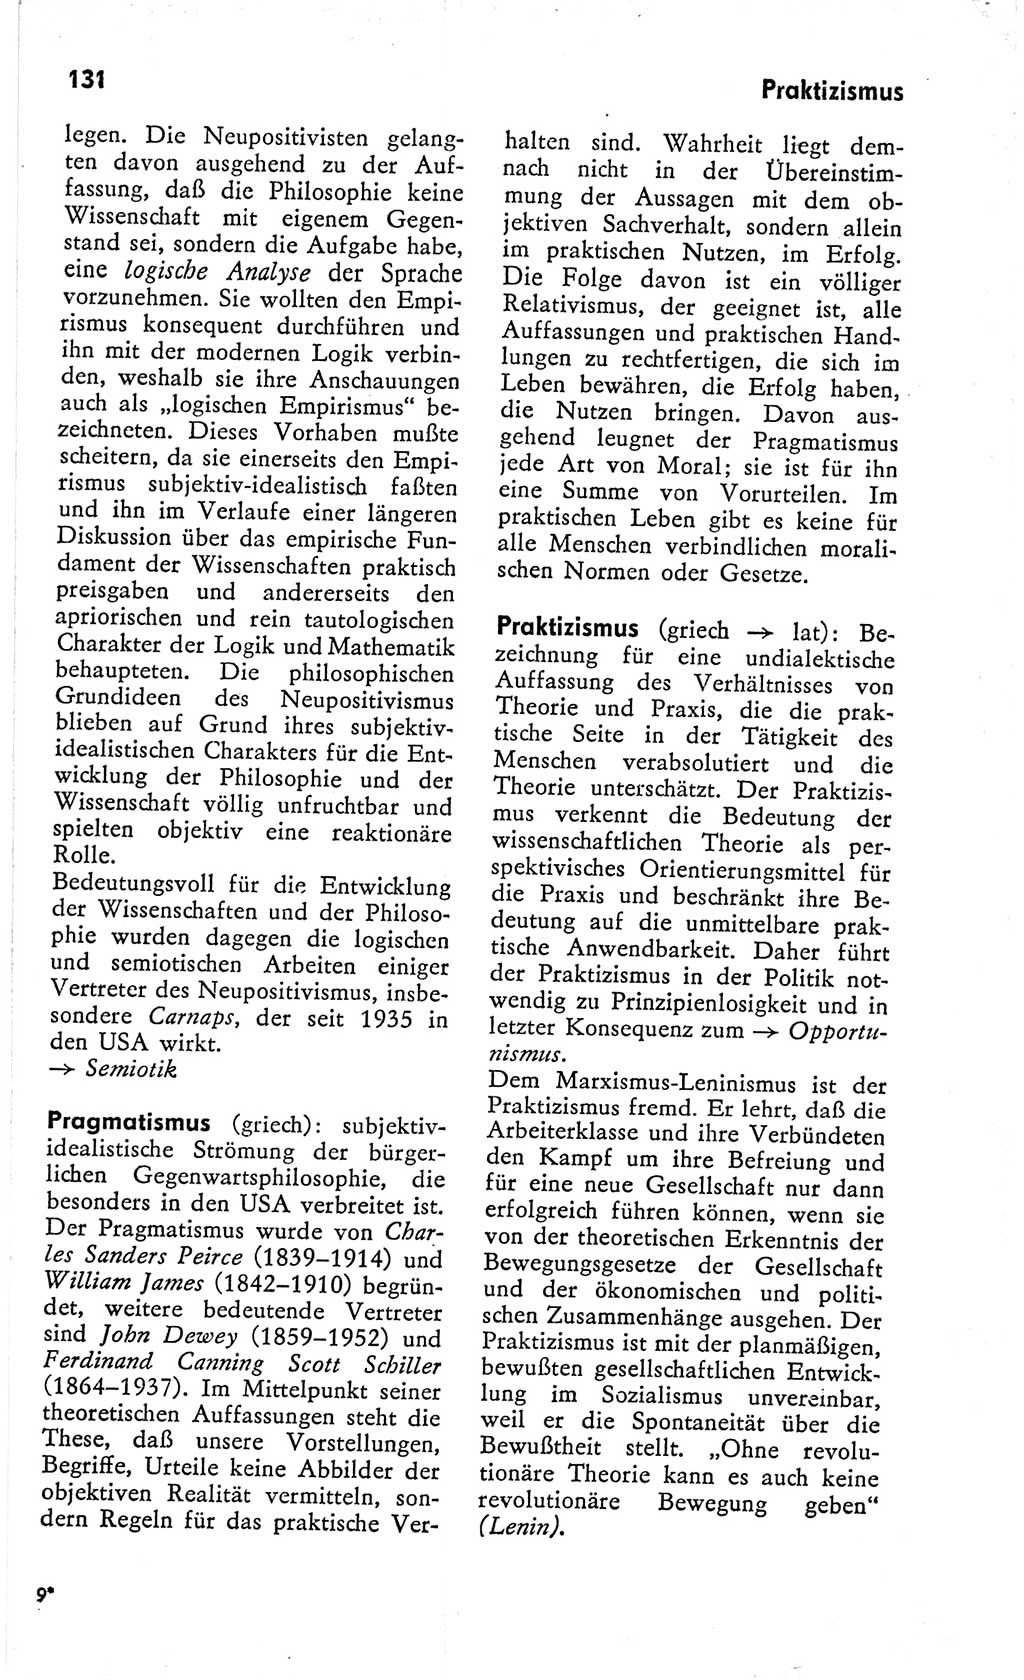 Kleines Wörterbuch der marxistisch-leninistischen Philosophie [Deutsche Demokratische Republik (DDR)] 1966, Seite 131 (Kl. Wb. ML Phil. DDR 1966, S. 131)